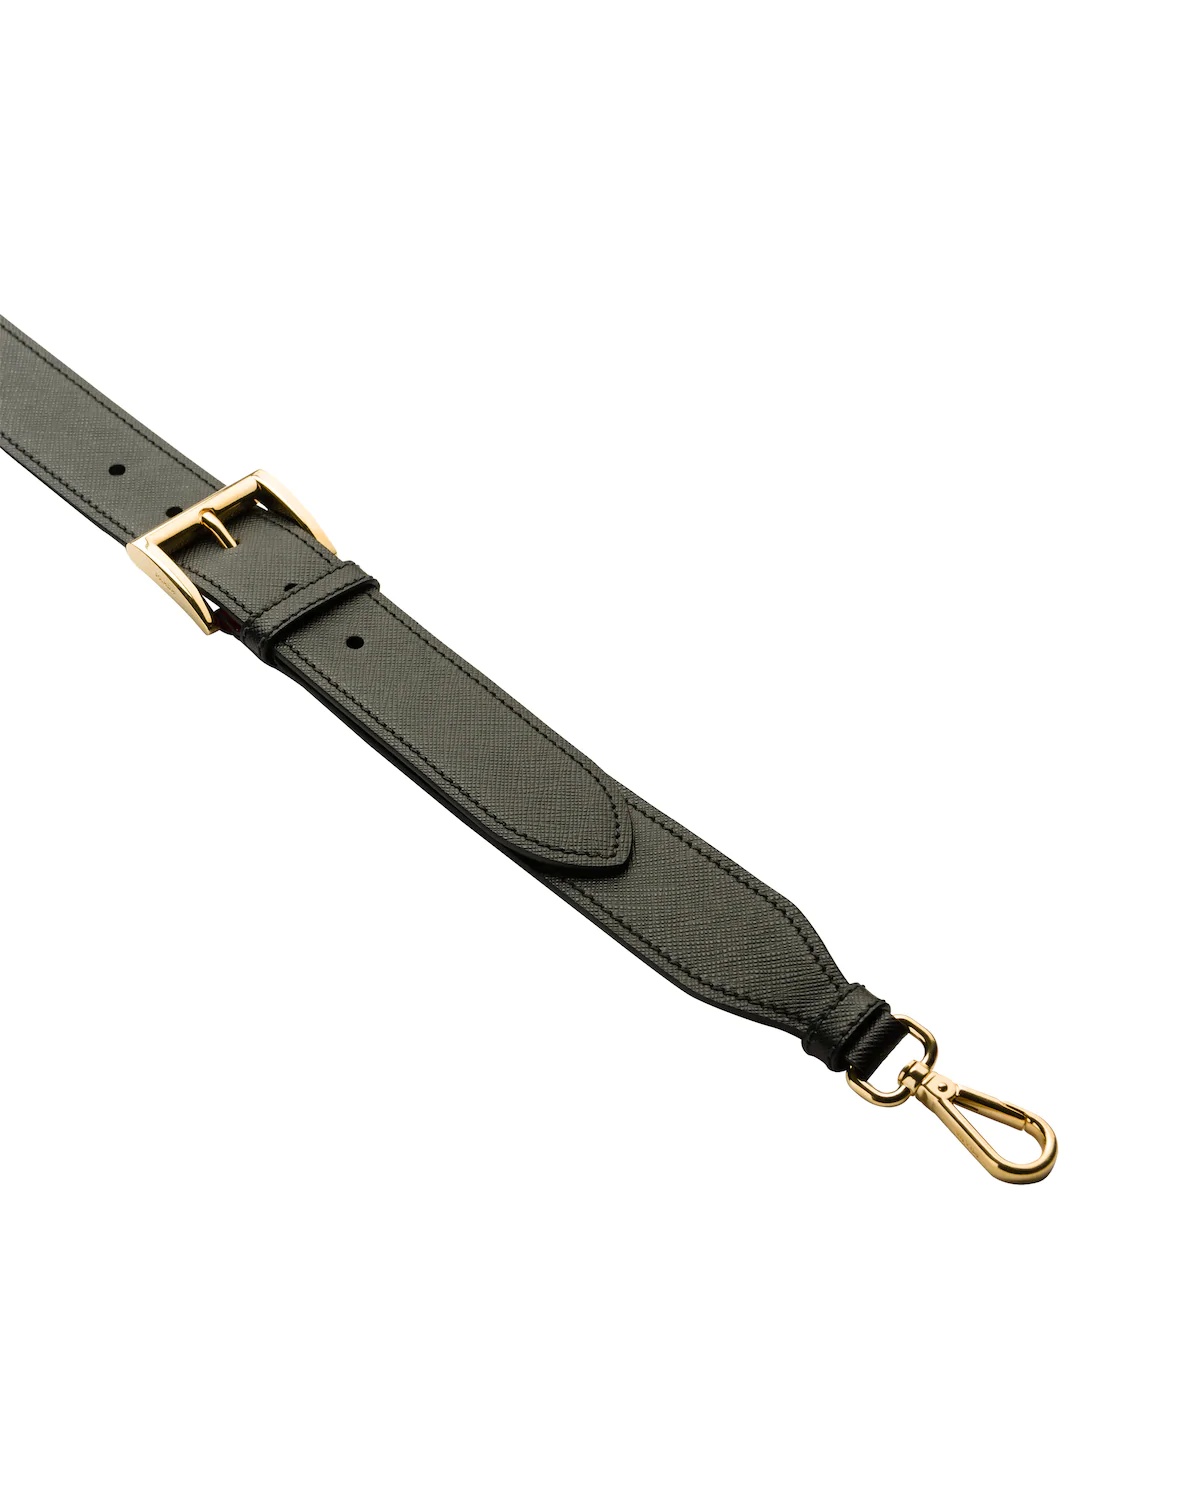 Adjustable Saffiano leather shoulder strap - 3